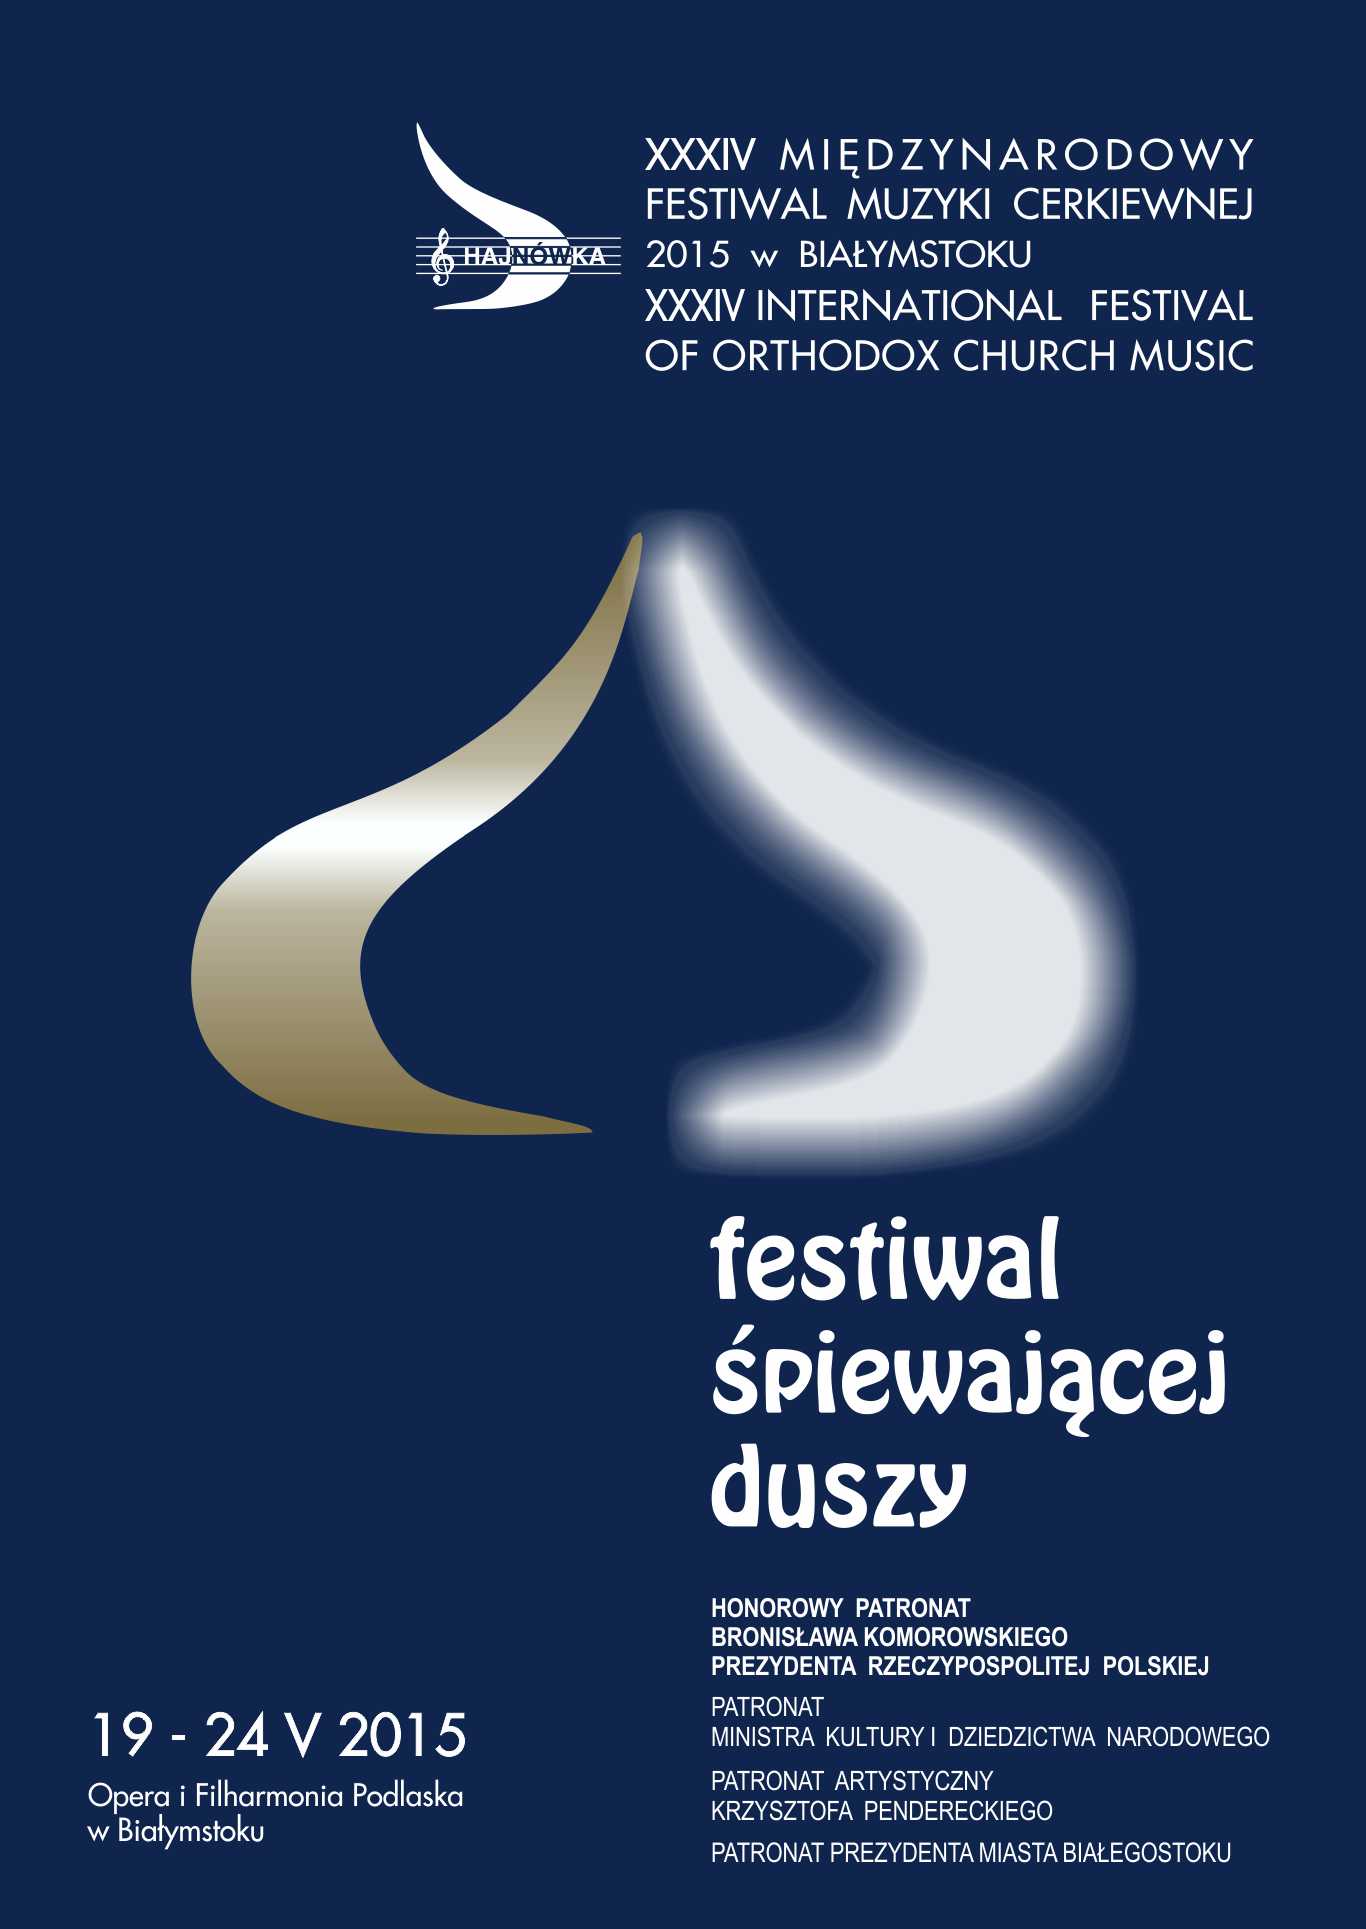 XXXIV Międzynarodowy Festiwal Muzyki Cerkiewnej Hajnówka 2015 (źródło: materiały prasowe)